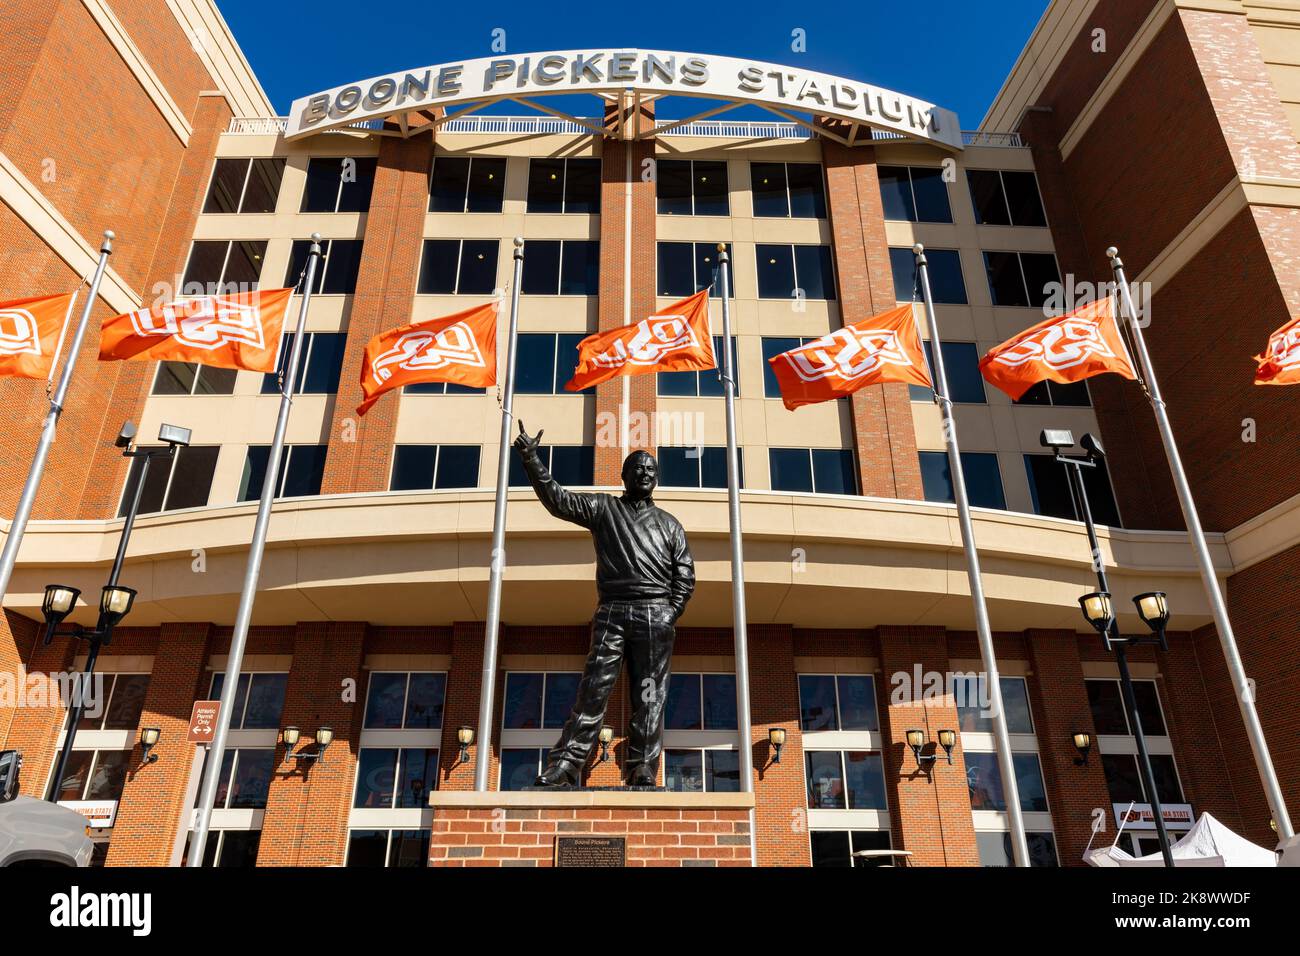 Stillwater, OK - 21 octobre 2022 : statue de Boone Pickens devant le stade de Boone Pickens, stade de football de l'université d'État de l'Oklahoma Banque D'Images